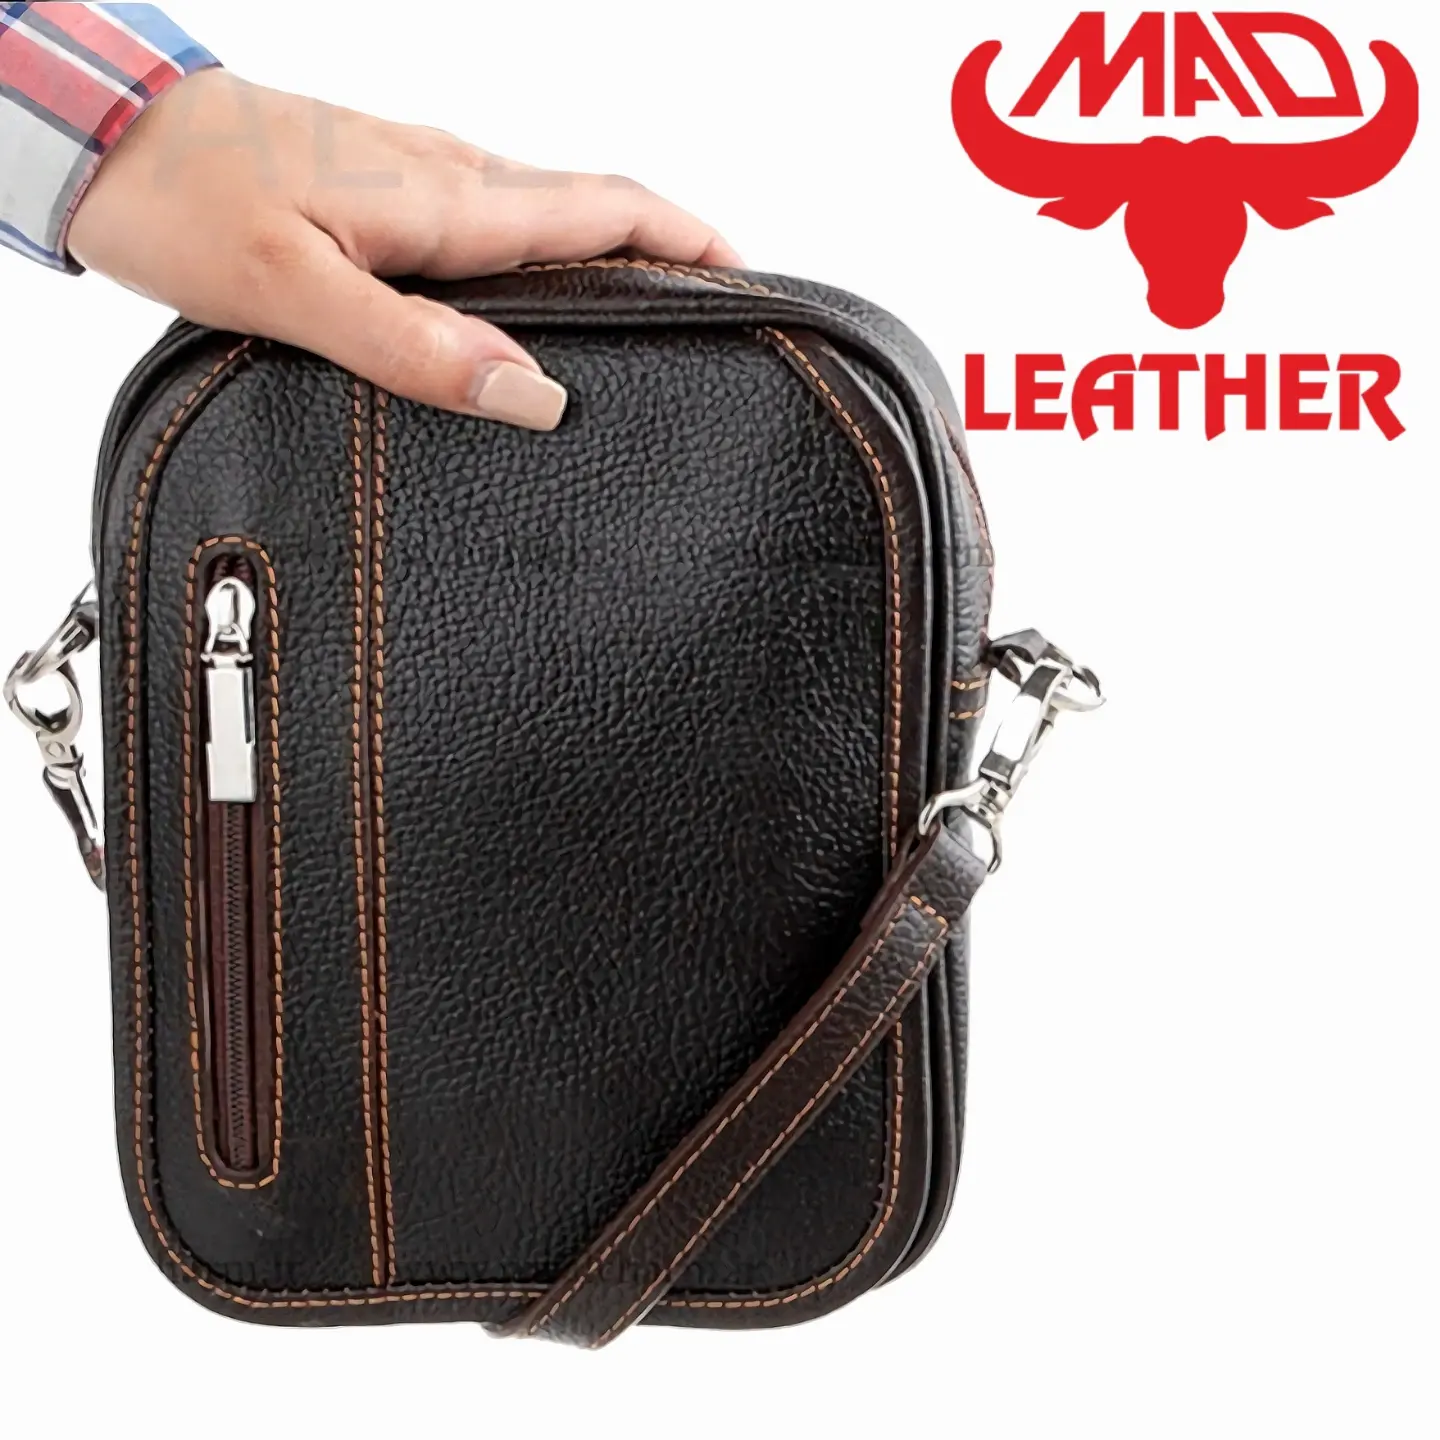 کیف دوشی چرم ماد کد 138 MAD Leather 